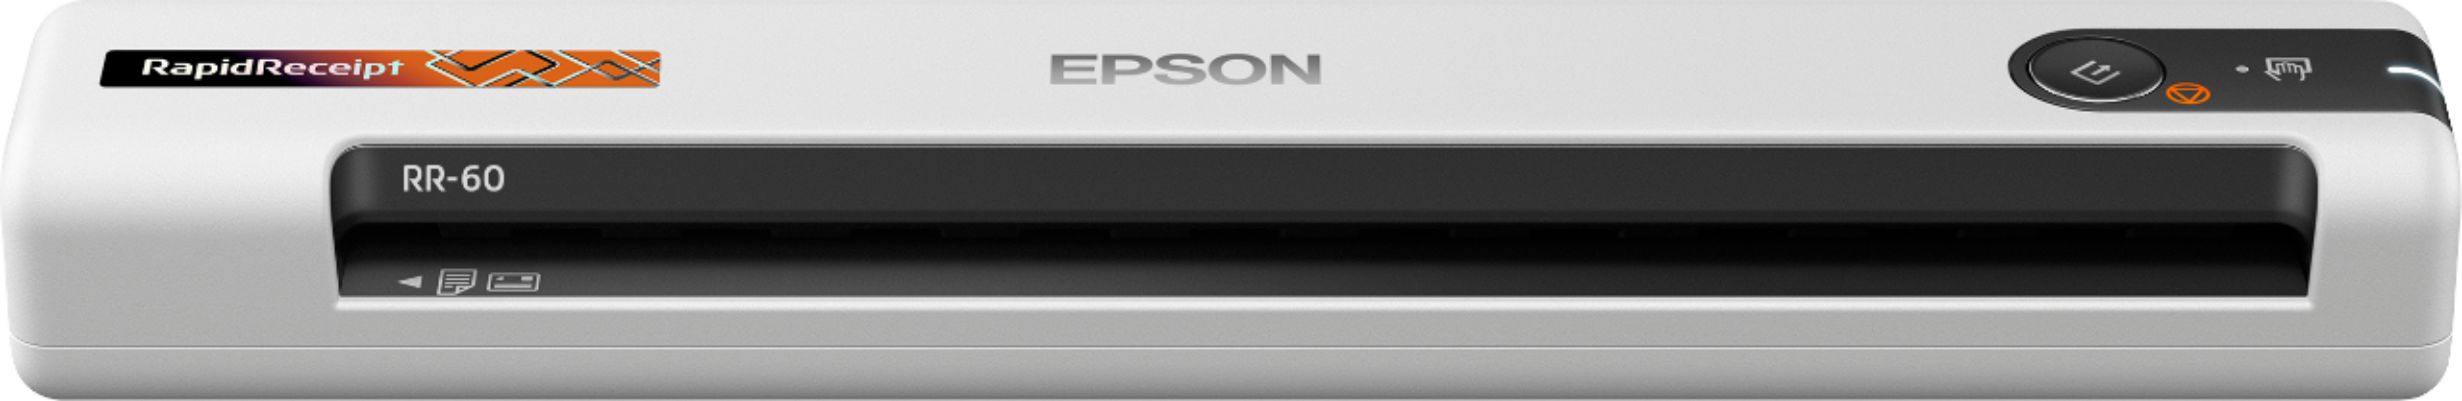 Epson RapidReceipt RR-60 Mobile Receipt and Color Document Scanner